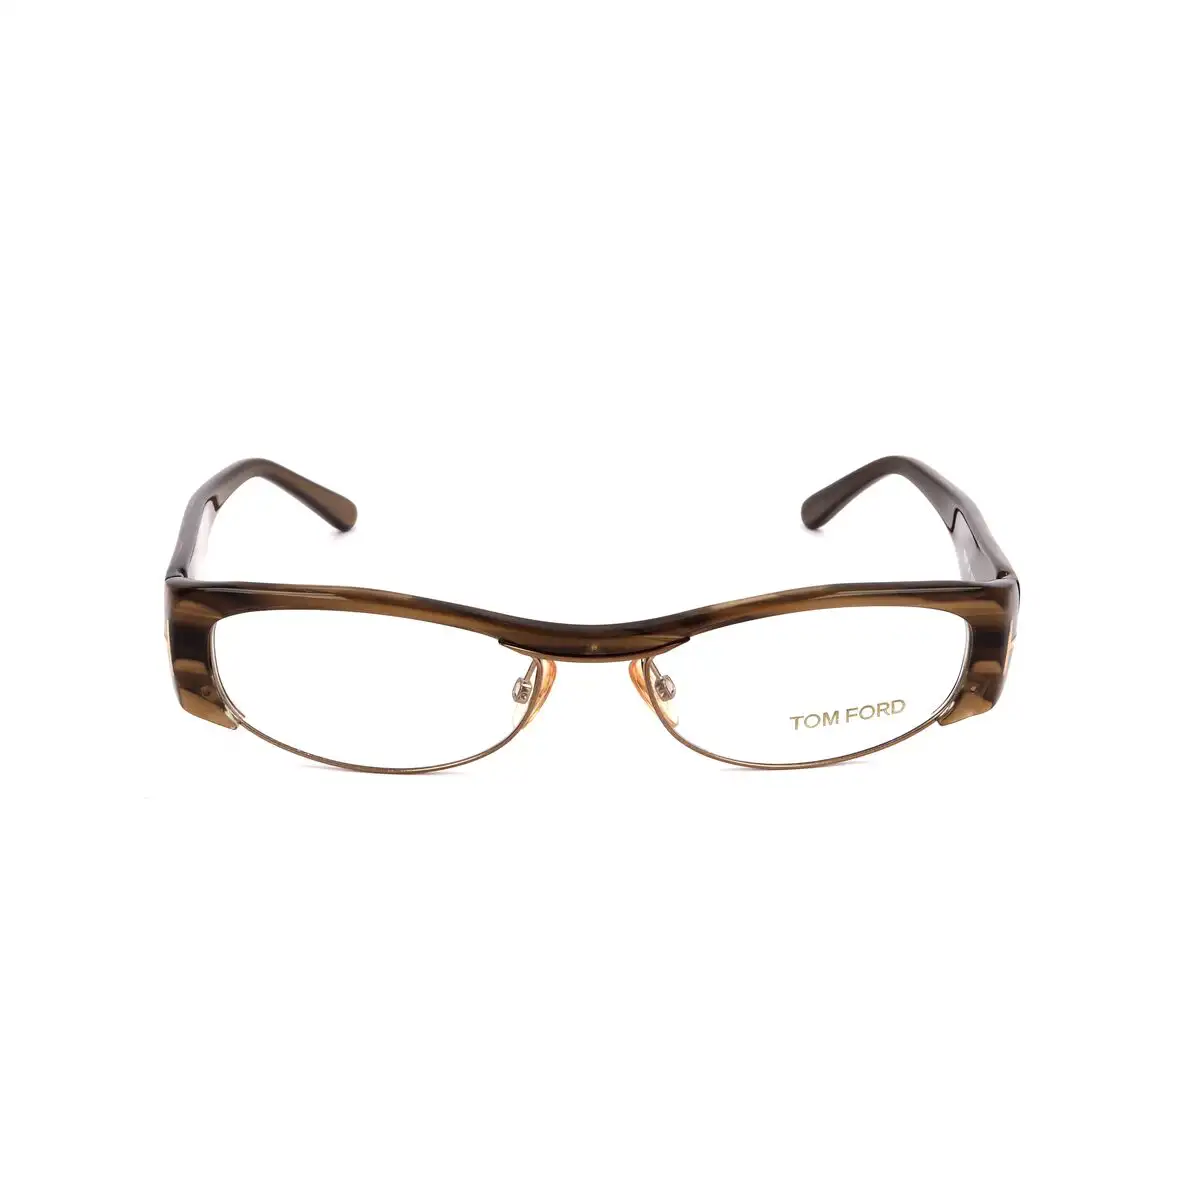 Monture de lunettes femme tom ford ft5076 u61 marron_9805. Bienvenue sur DIAYTAR SENEGAL - Où le Shopping est une Affaire Personnelle. Découvrez notre sélection et choisissez des produits qui reflètent votre unicité et votre individualité.